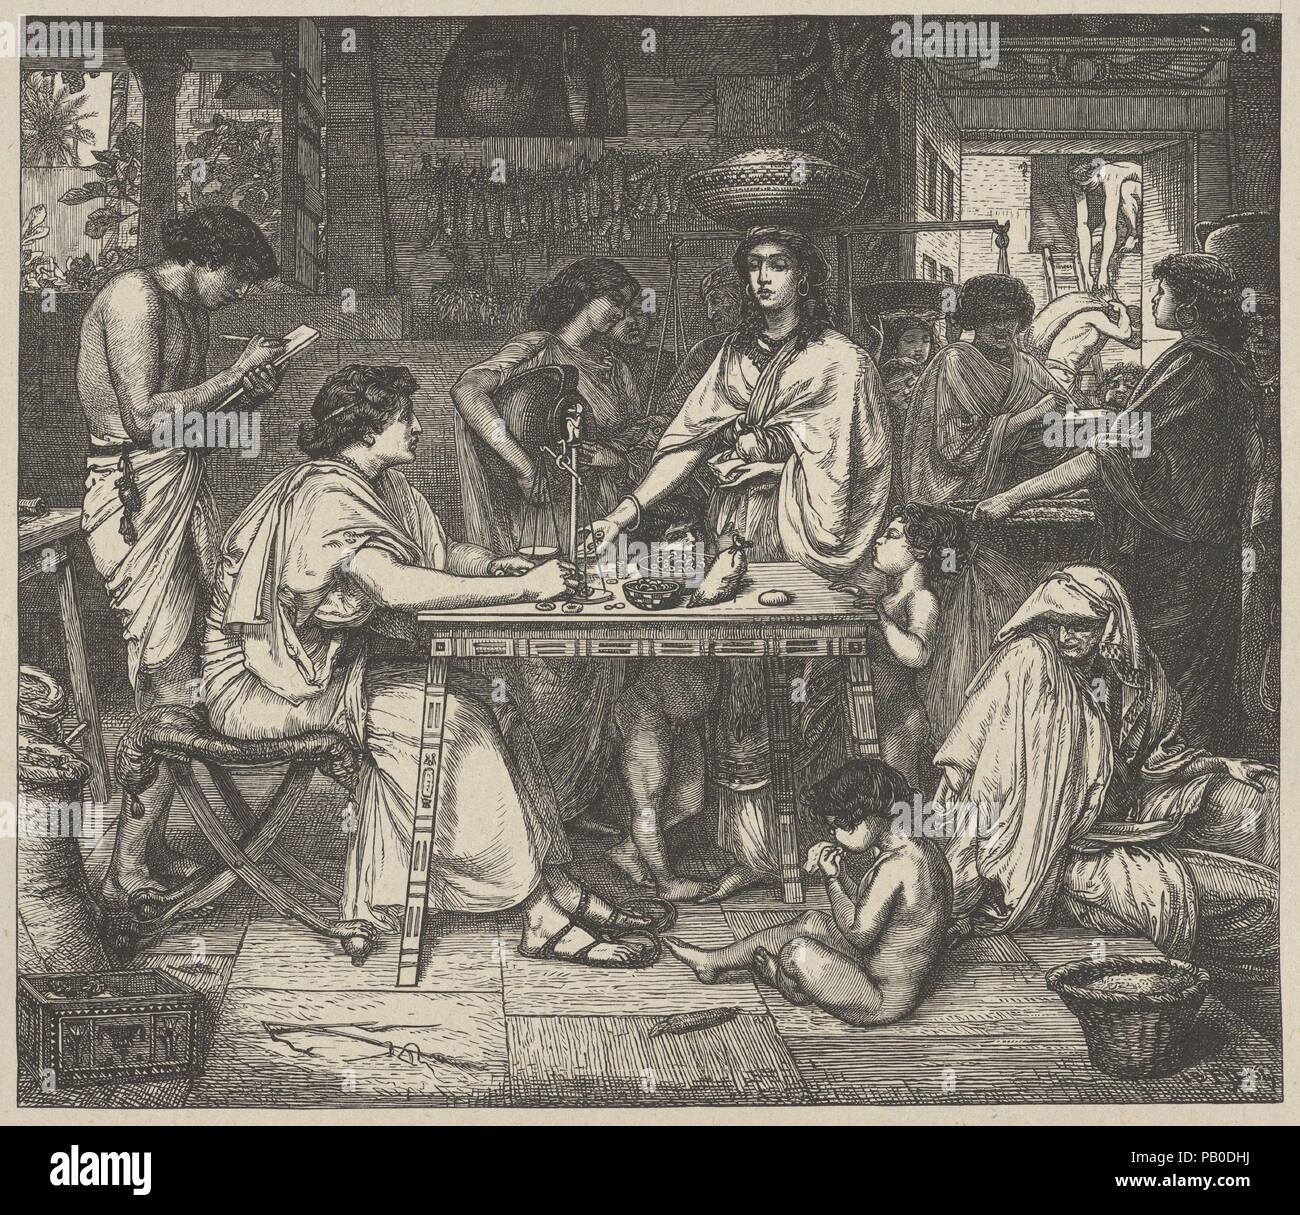 Joseph vertreibt Mais (Dalziels "Bibel Galerie). Artist: Nach Sir Edward John Poynter (British (Frankreich) geboren, Paris 1836-1919 London). Abmessungen: Bild: 6 5/16 x 7 1/4 in. (16×18,4 cm) Indien Blatt: 8 7/16 x 9 1/4 in. (21,5 × 23,5 cm) Berg: 16 7/16 in. × 12 15/16 in. (41,8 × 32,8 cm). Engraver: Dalziel Brüder (British, 1839-1893) aktiv. Drucker: Camden Drücken Sie (Briten, London). Verlag: Scribner und Welford (New York, NY). Datum: 1864-81. Museum: Metropolitan Museum of Art, New York, USA. Stockfoto